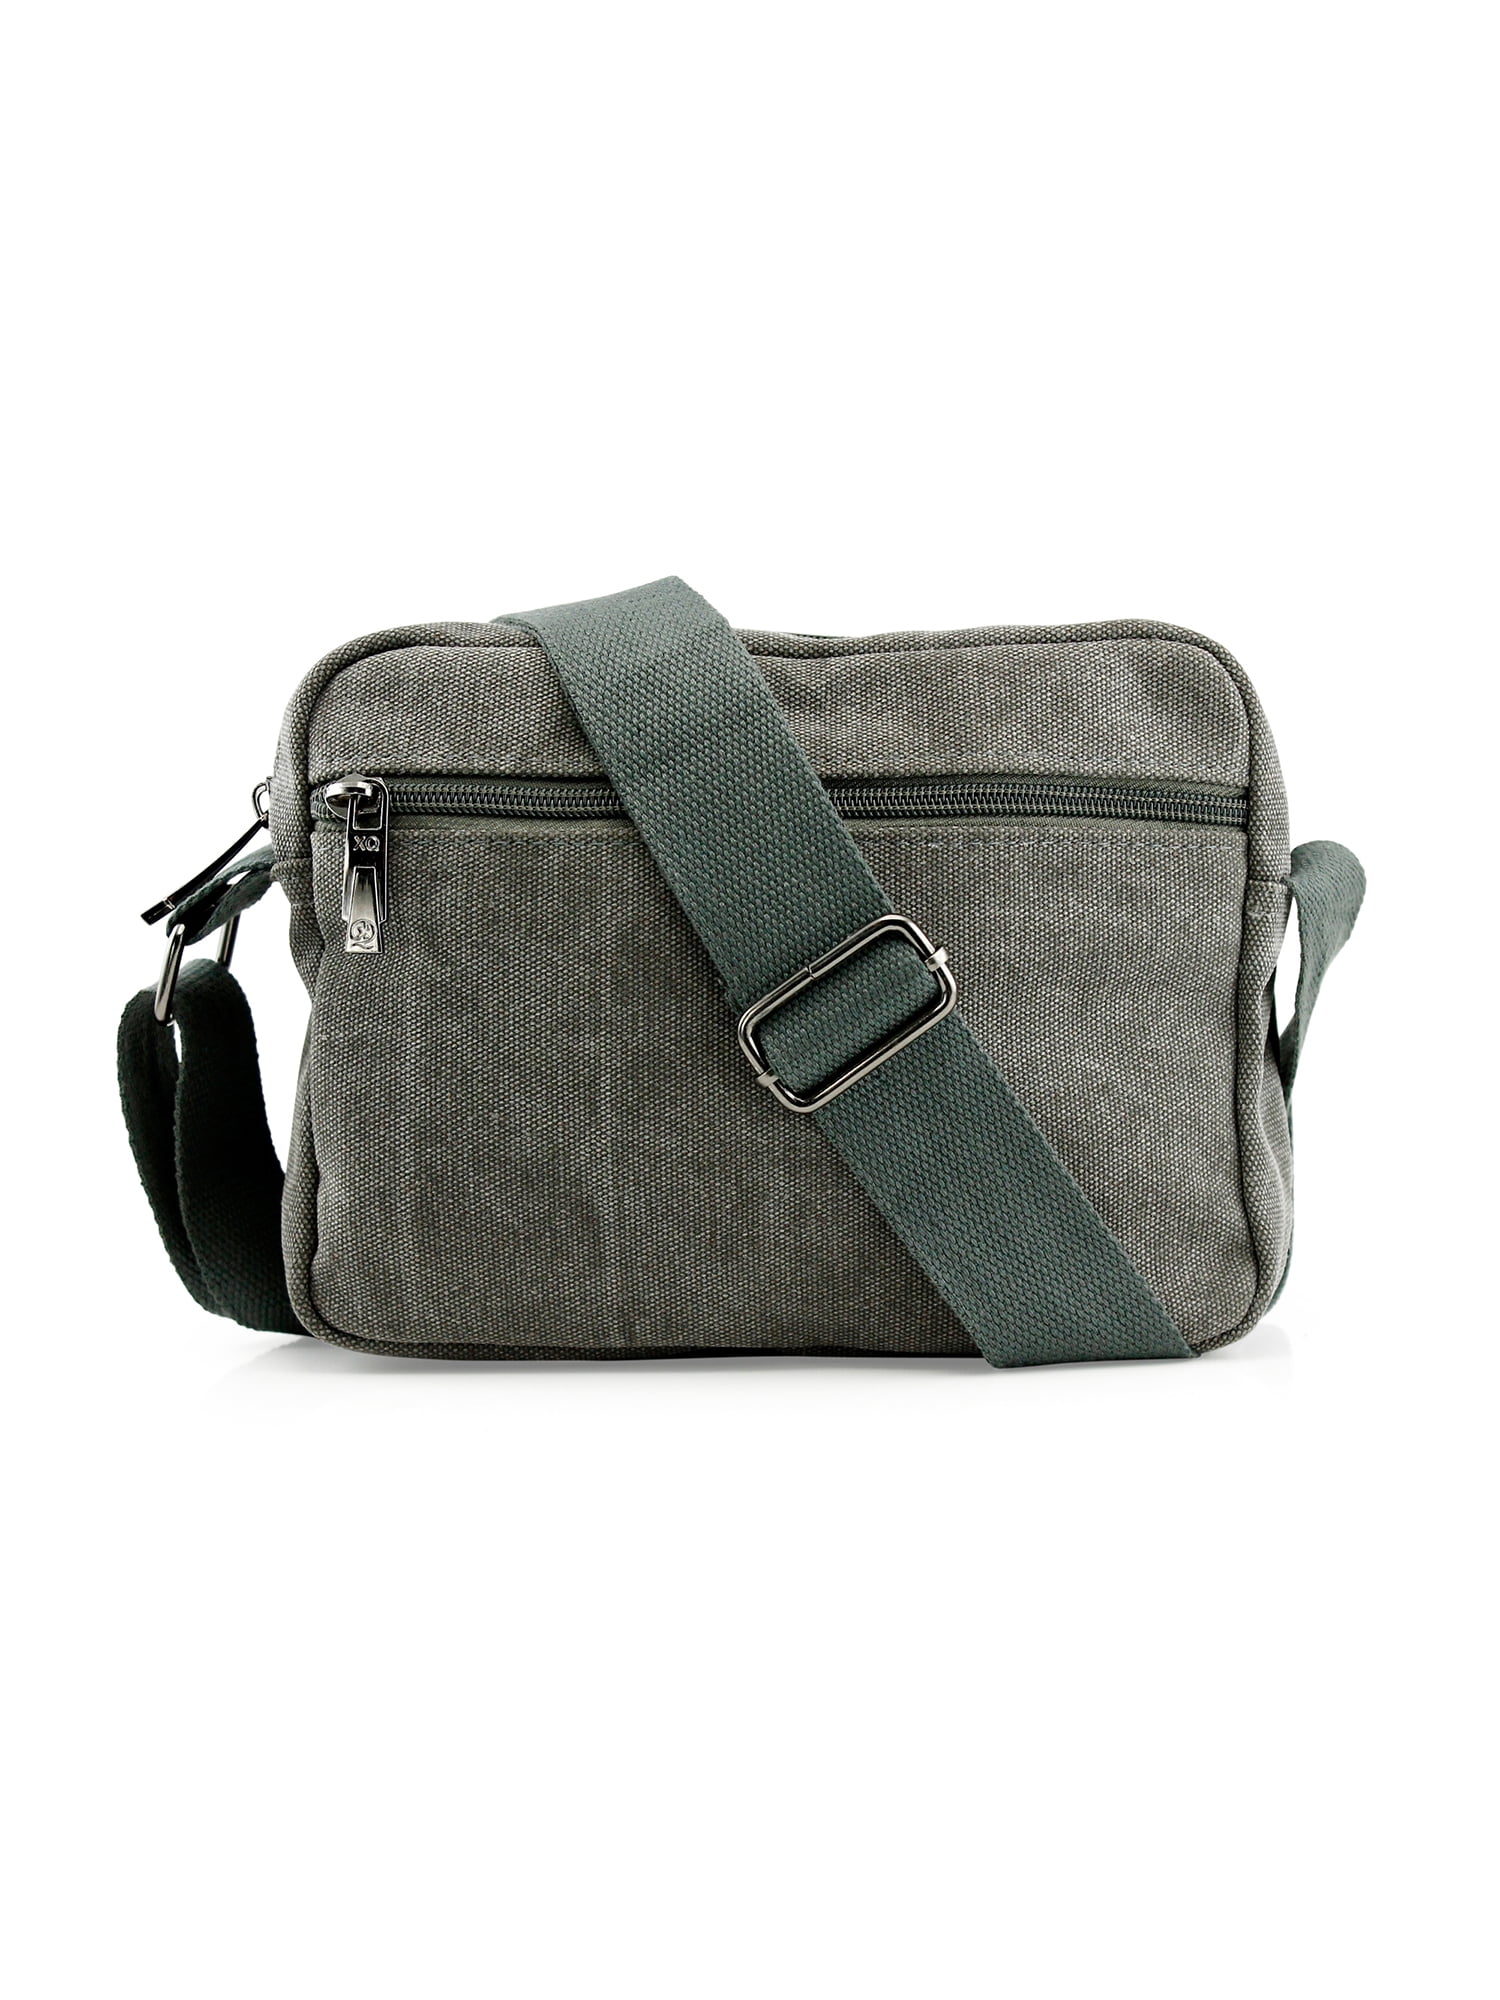 Canvas Men's Handbags, Tote Bag On Sale, Vintage Backpack, Shoulder Bag,  Chic Crossbody Bag MT17